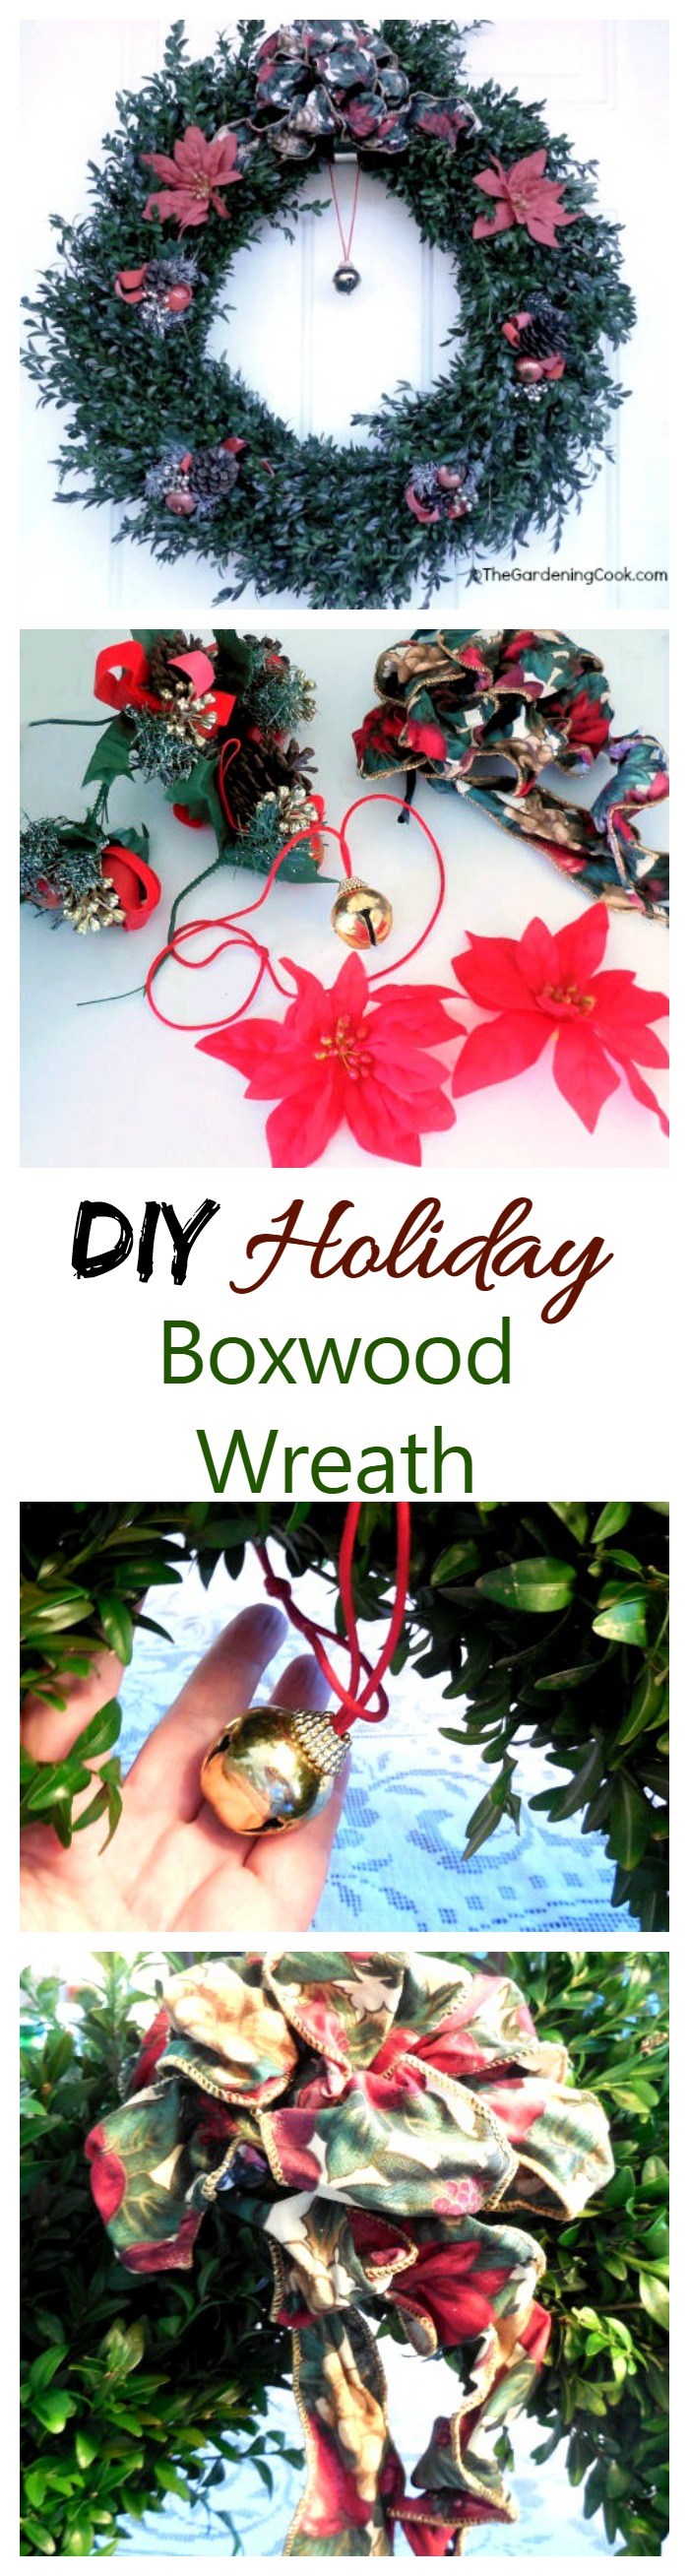 Boxwood vánoční věnec - DIY Holiday Project